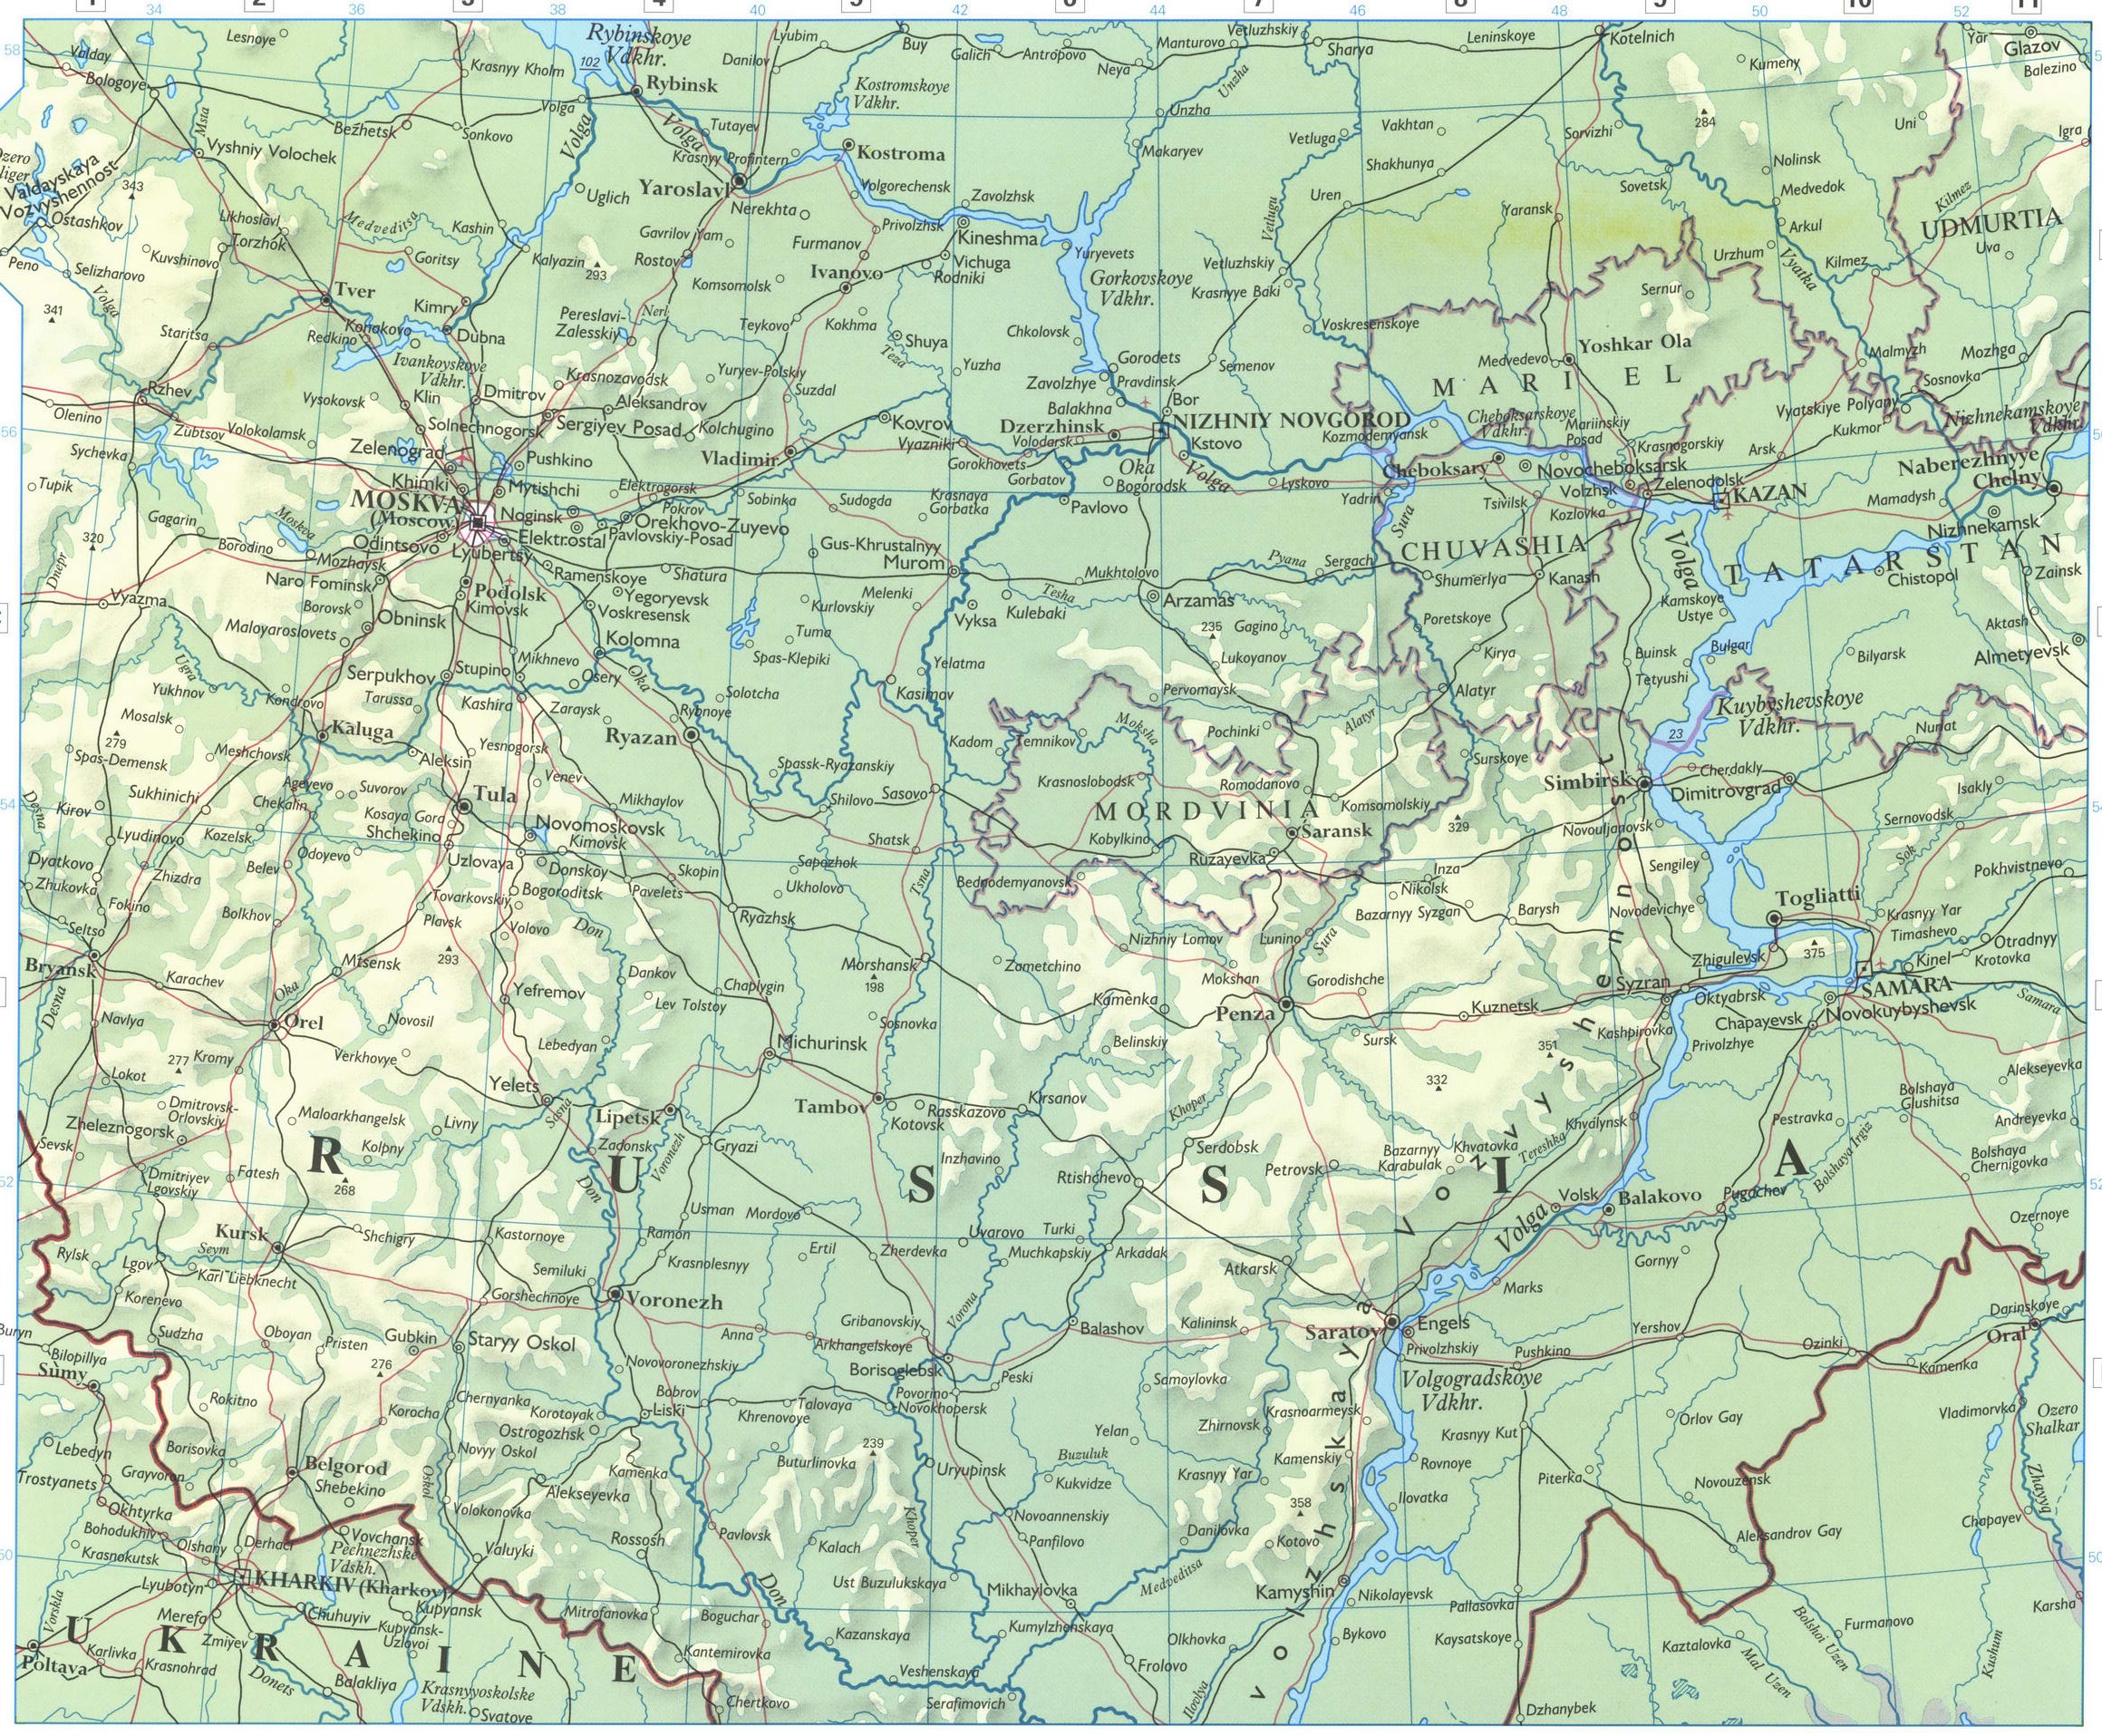 Volga basin and Caucasus map